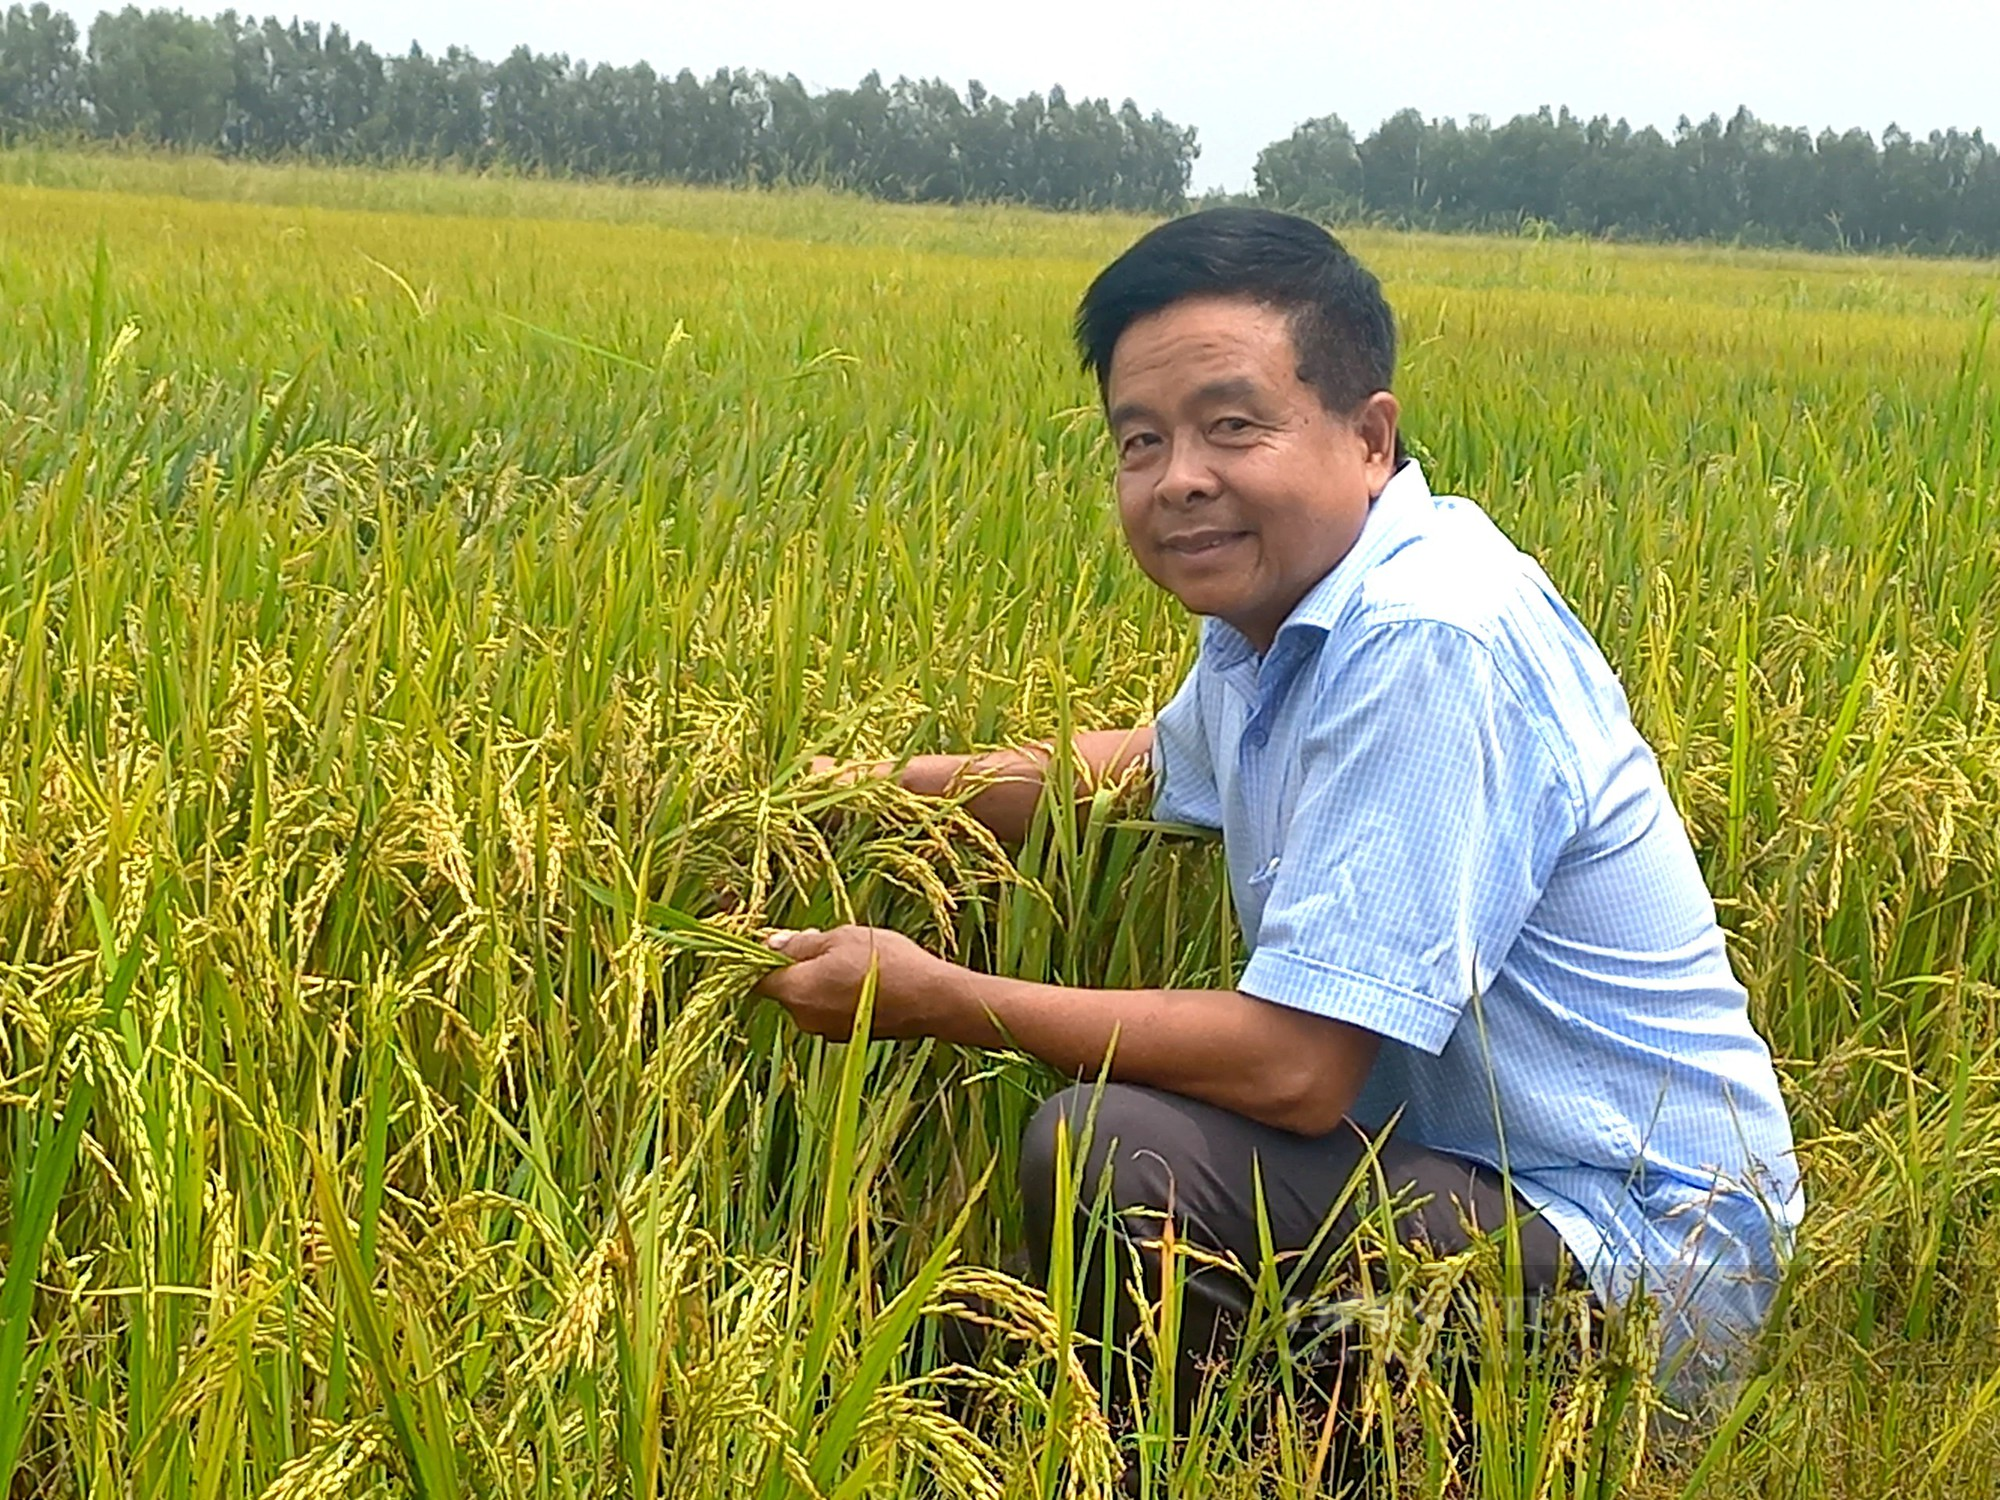 Bỏ làm giám đốc về trồng loại hạt xuất khẩu tỉ đô của Việt Nam, ông nông dân thu lợi hàng tỷ đồng/vụ - Ảnh 1.